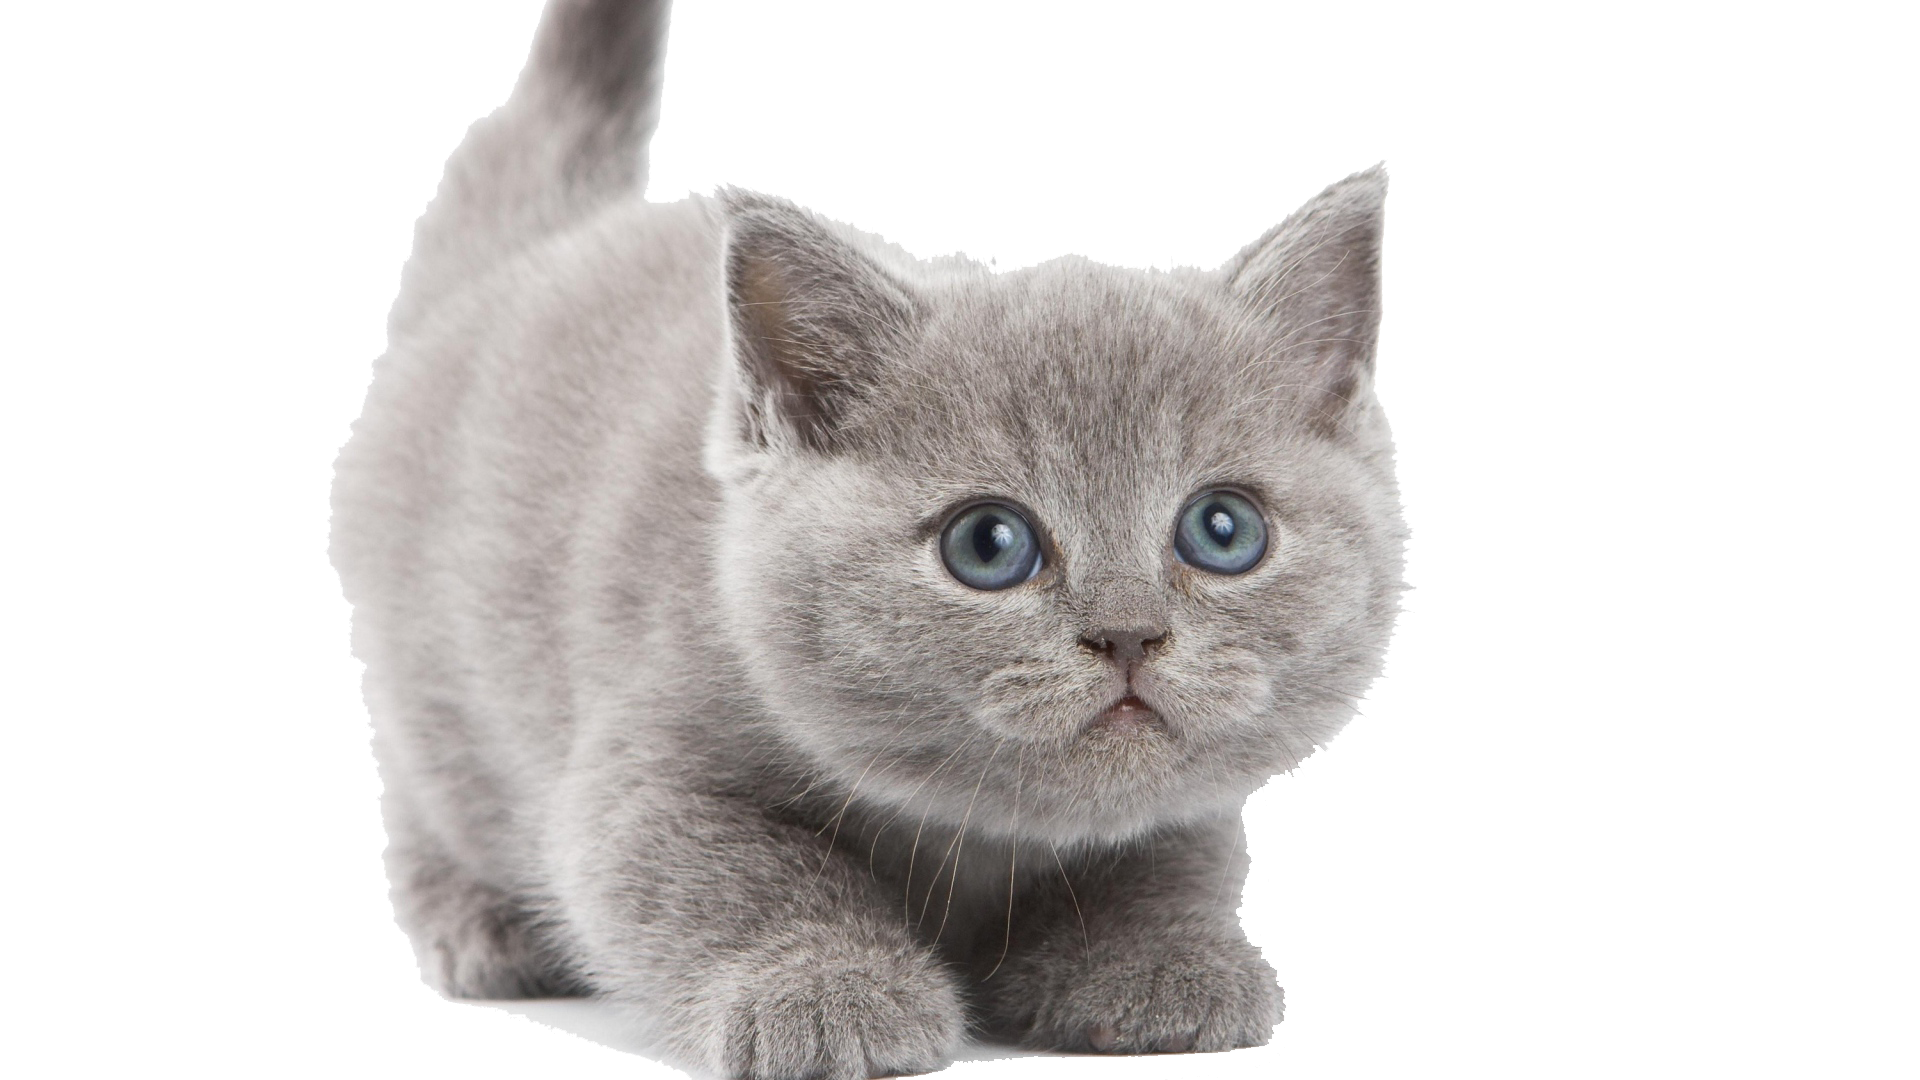 Kitten PNG Image